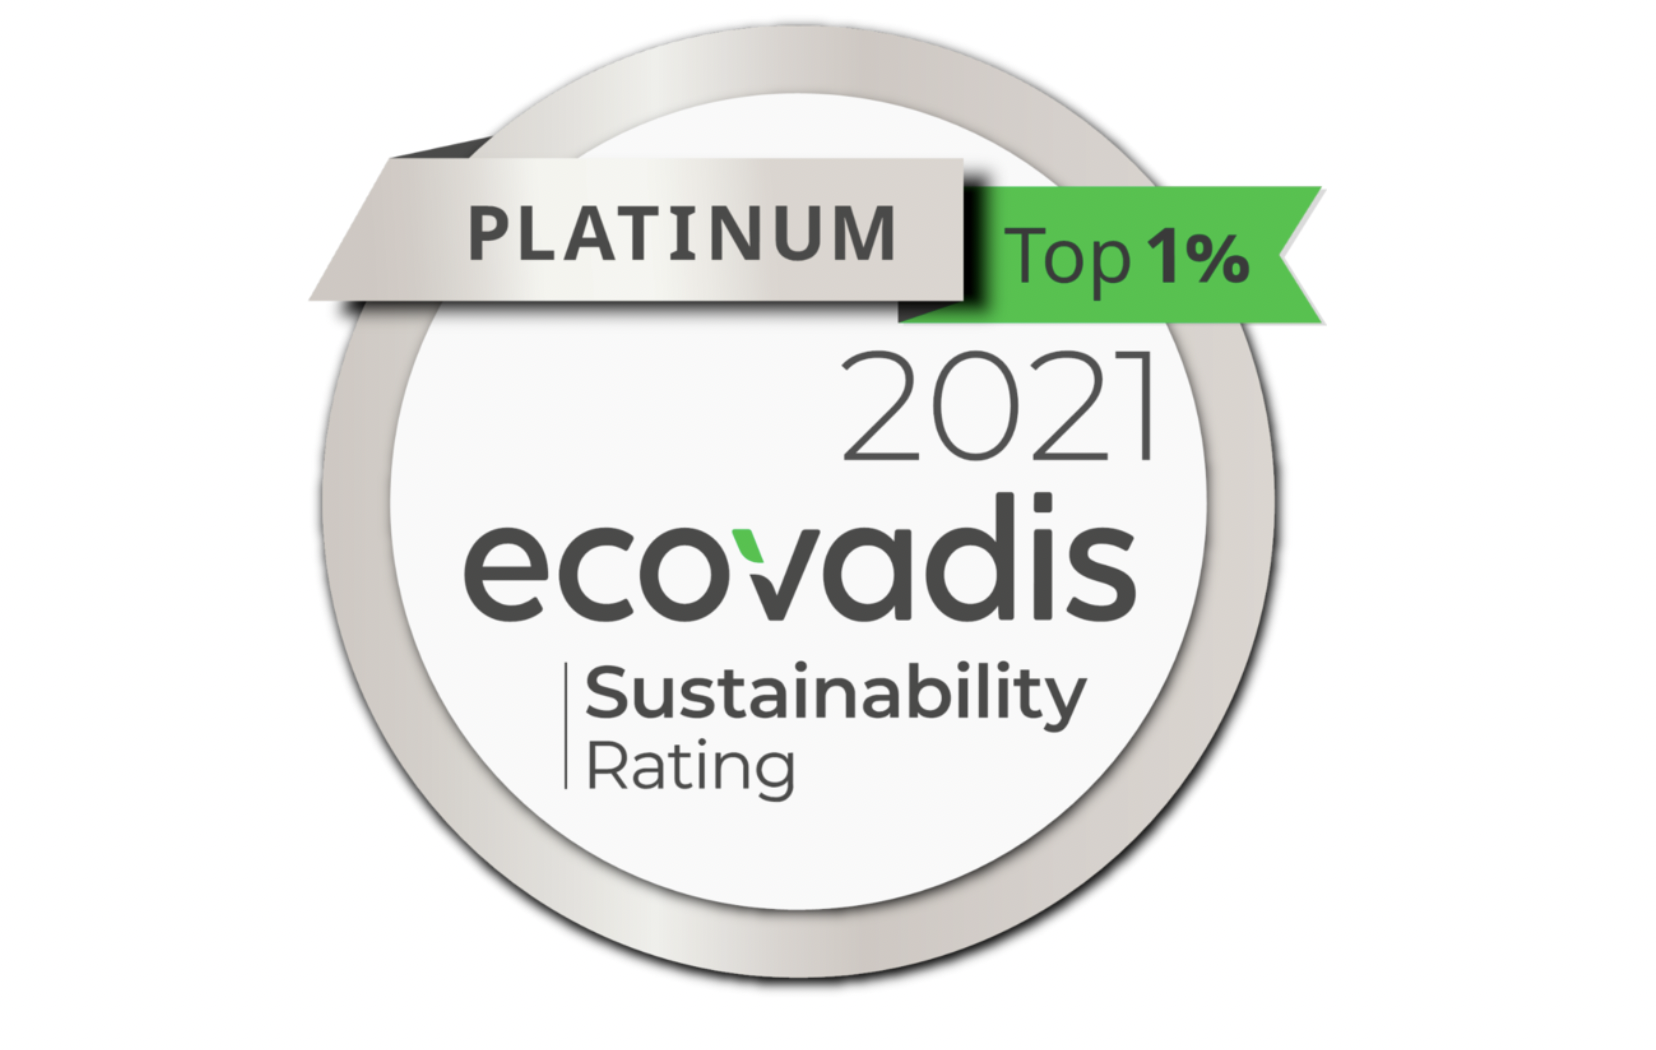 Firma Epson drugi rok z rzędu otrzymuje platynowy status EcoVadis w kategorii zrównoważonego rozwoju